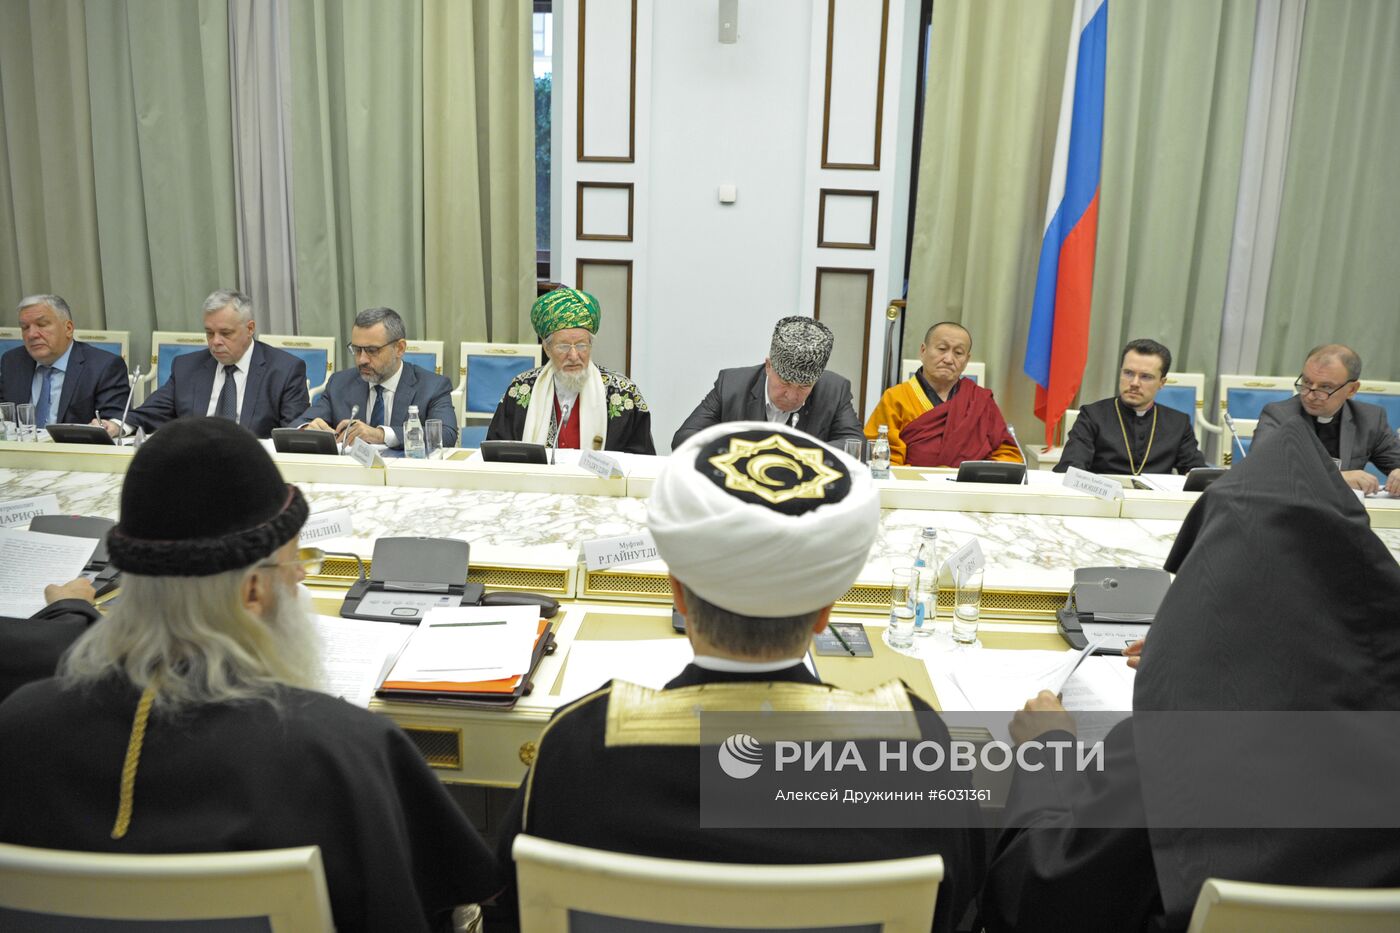 Совет по взаимодействию с религиозными объединениями при президенте РФ